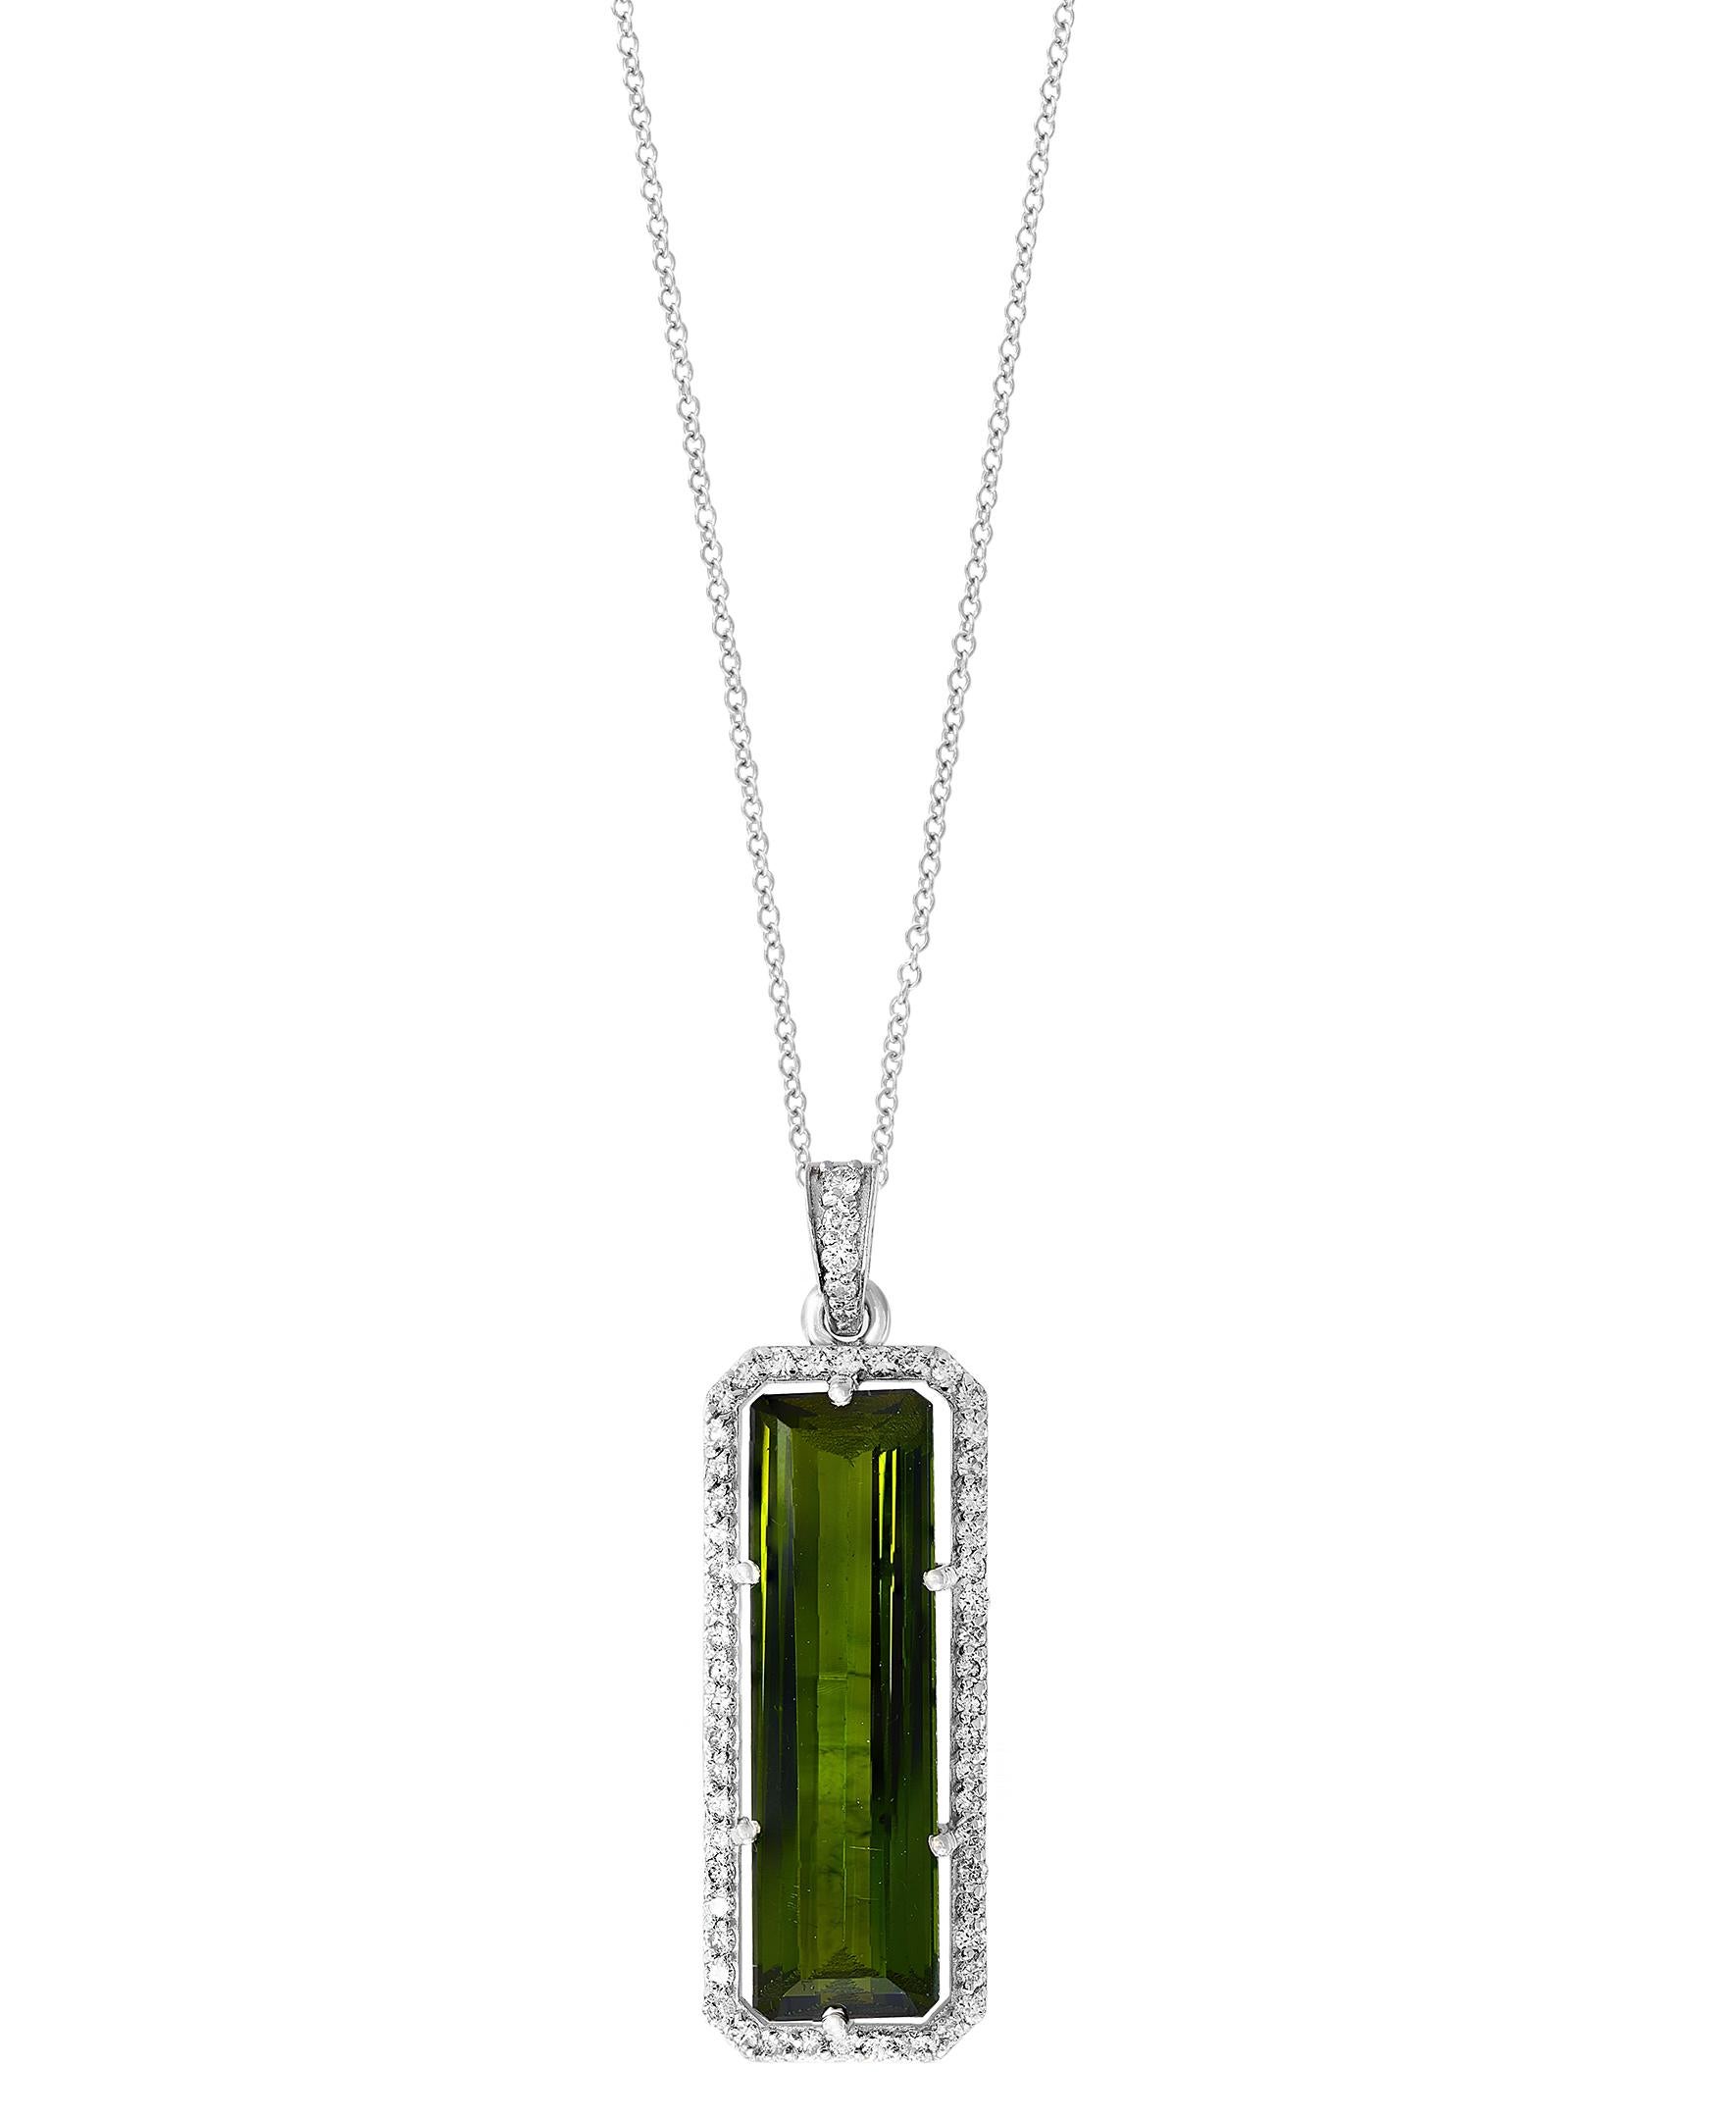 Women's 15 Carat Green Tourmaline and 1.1 Carat Diamond Pendant / Necklace 18 Karat Gold